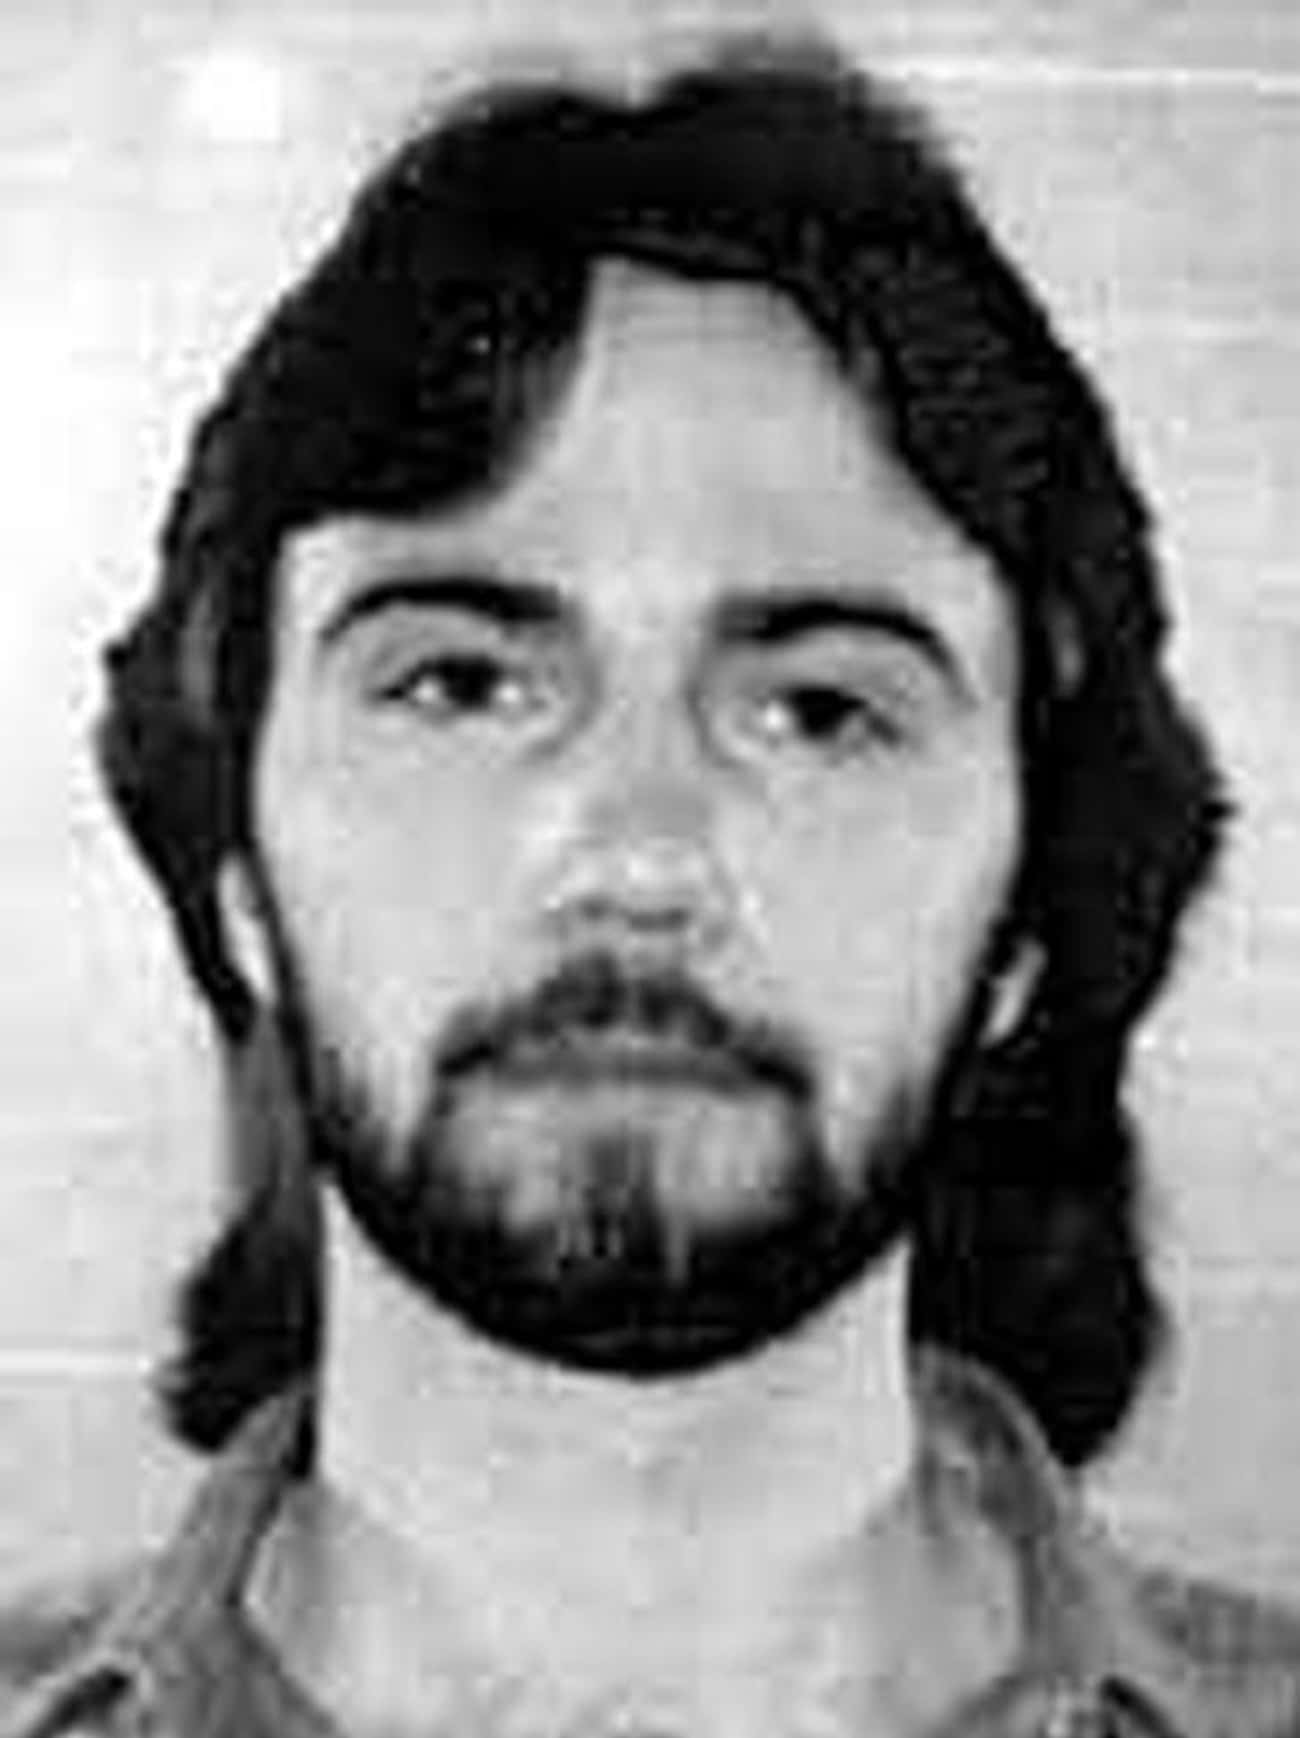 Richard Lynn Bare, 1984 - Murder, Prison Break